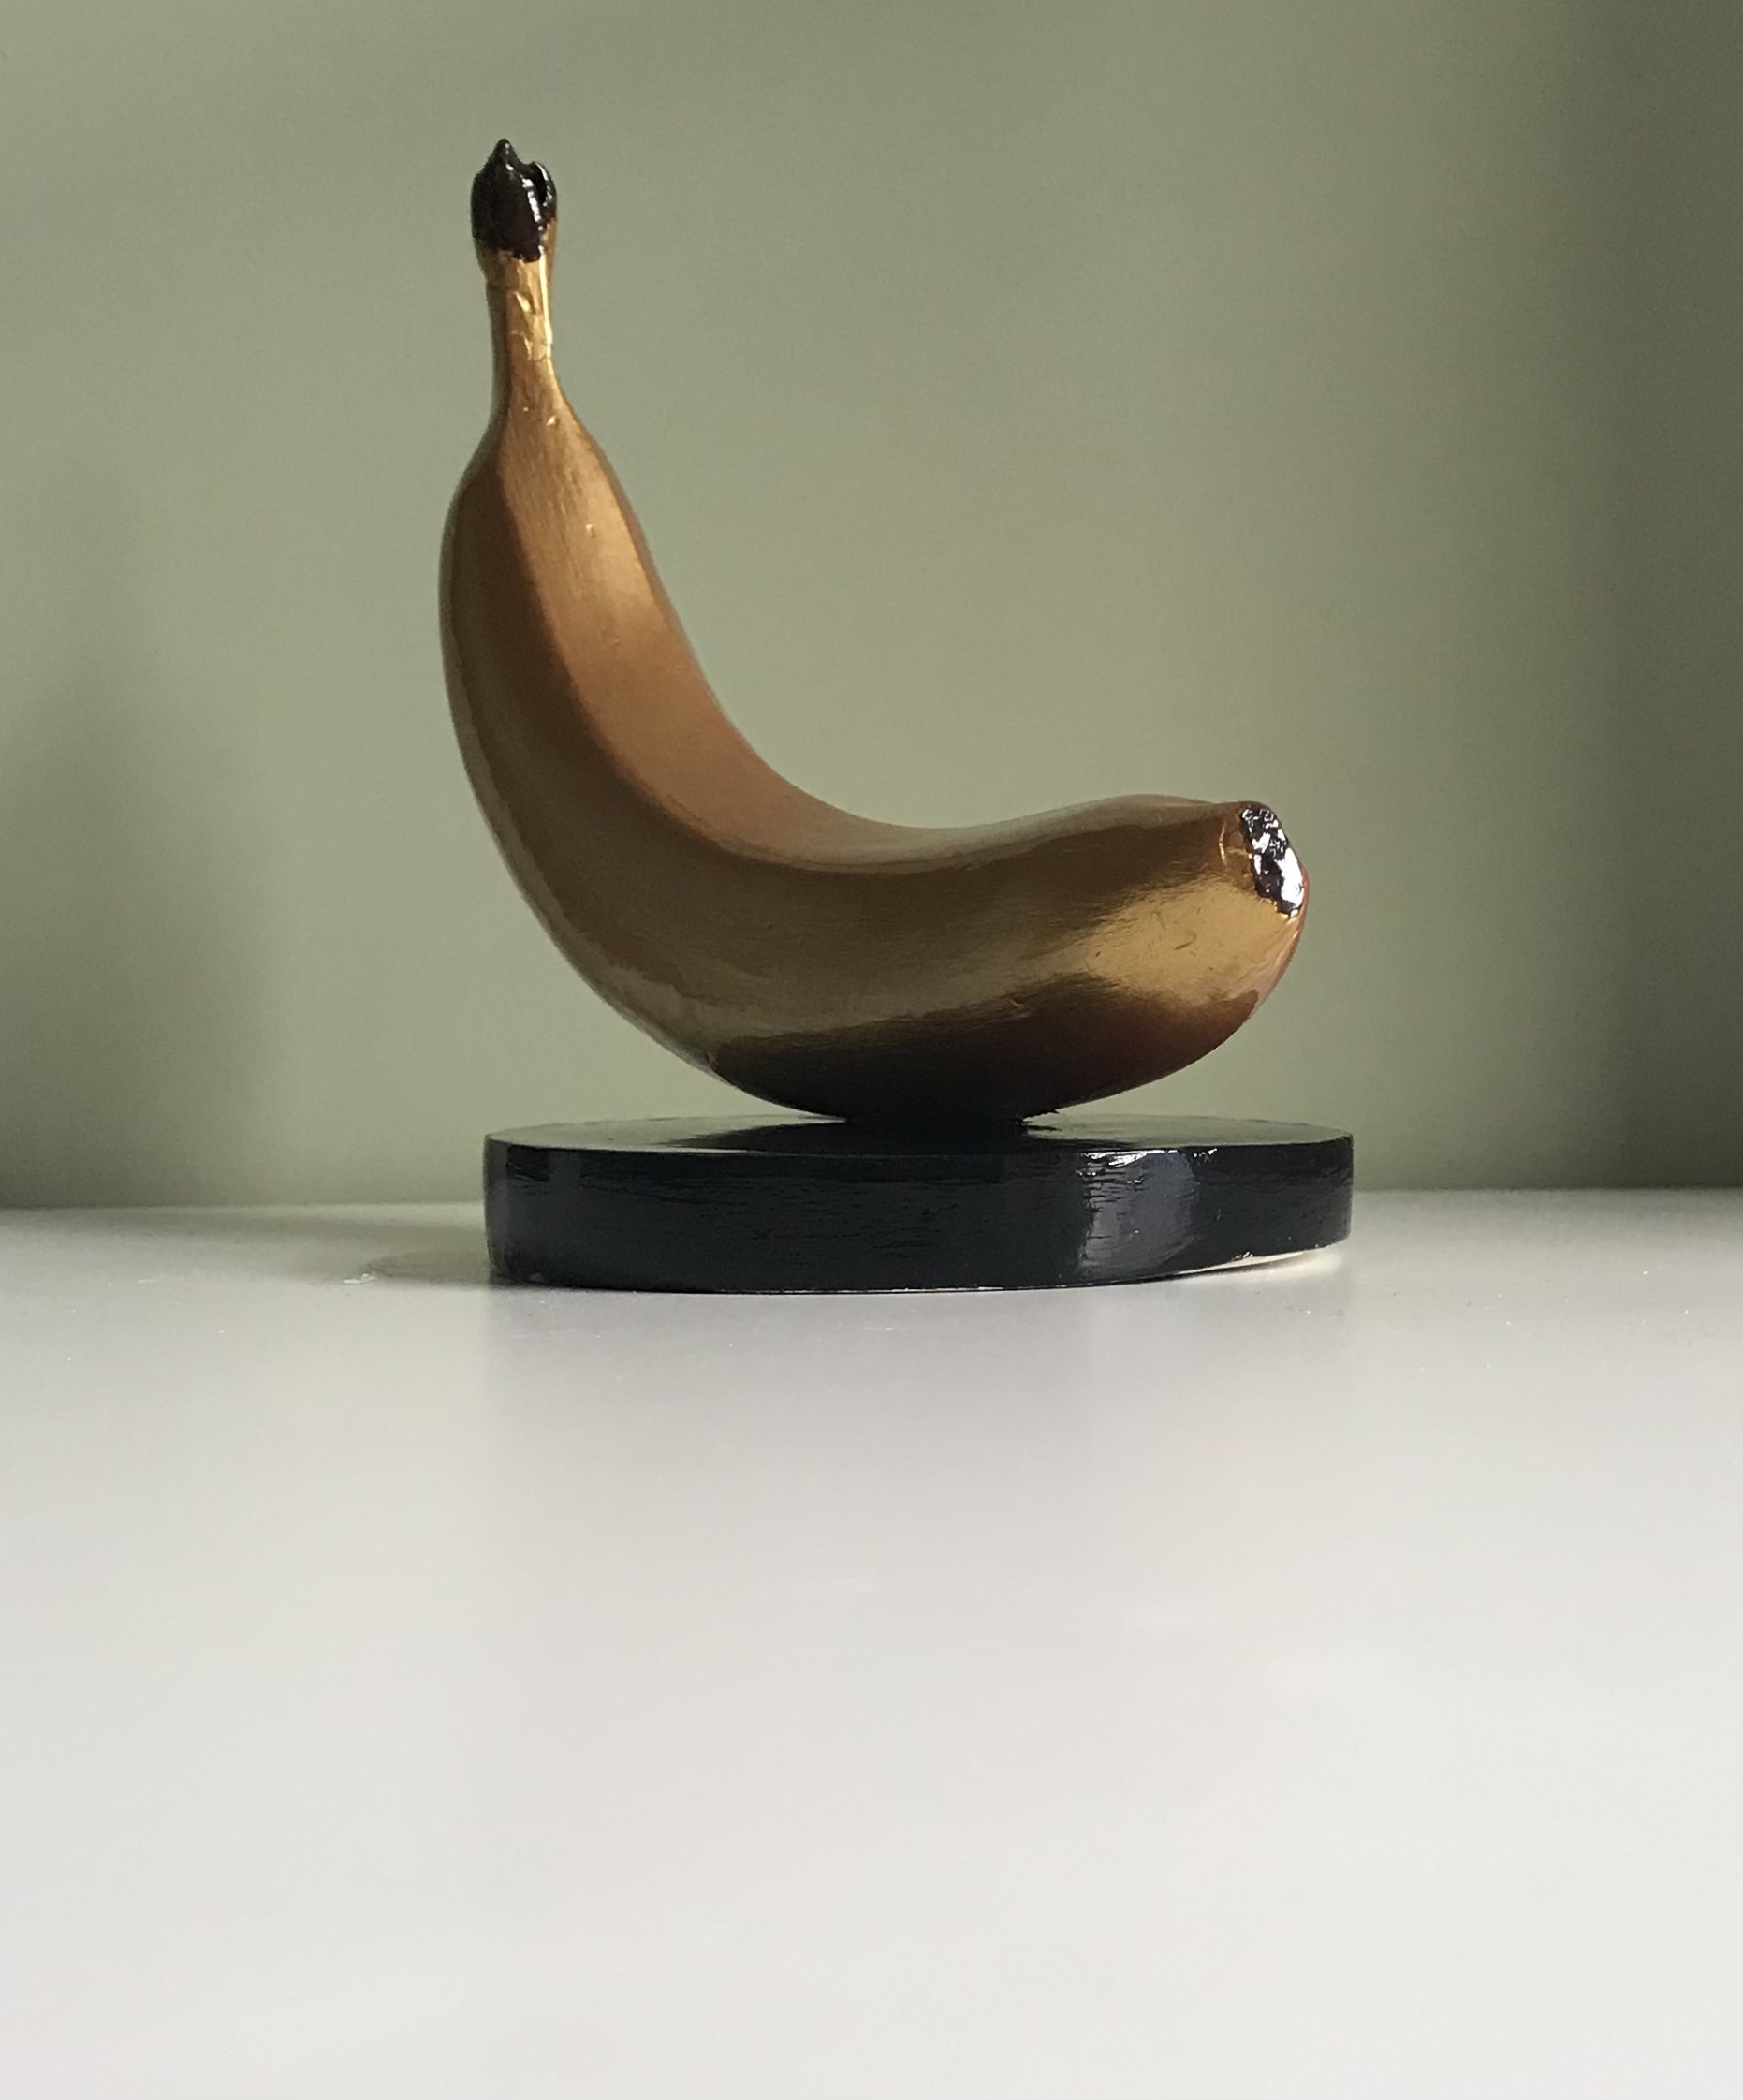 Golden Banana - 1, Dmitry Tsukan, Buy the painting casting